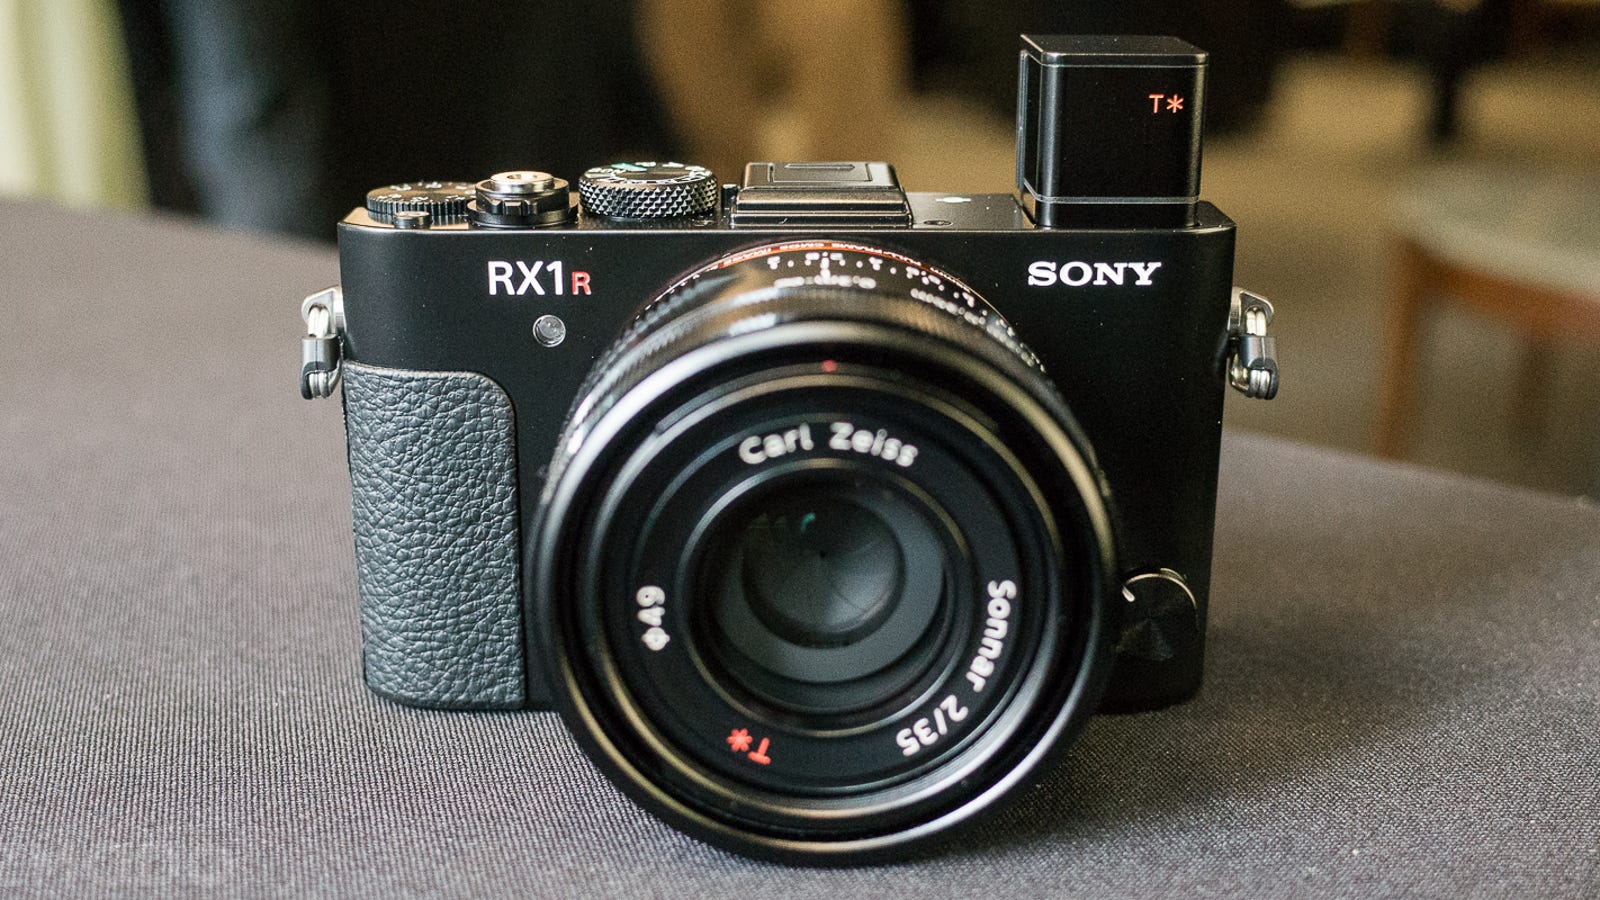 Sony mark ii. Sony rx1r II. Камера Sony rx1r II. Фотоаппарат сони старый. Sony rx1r II на штативе.